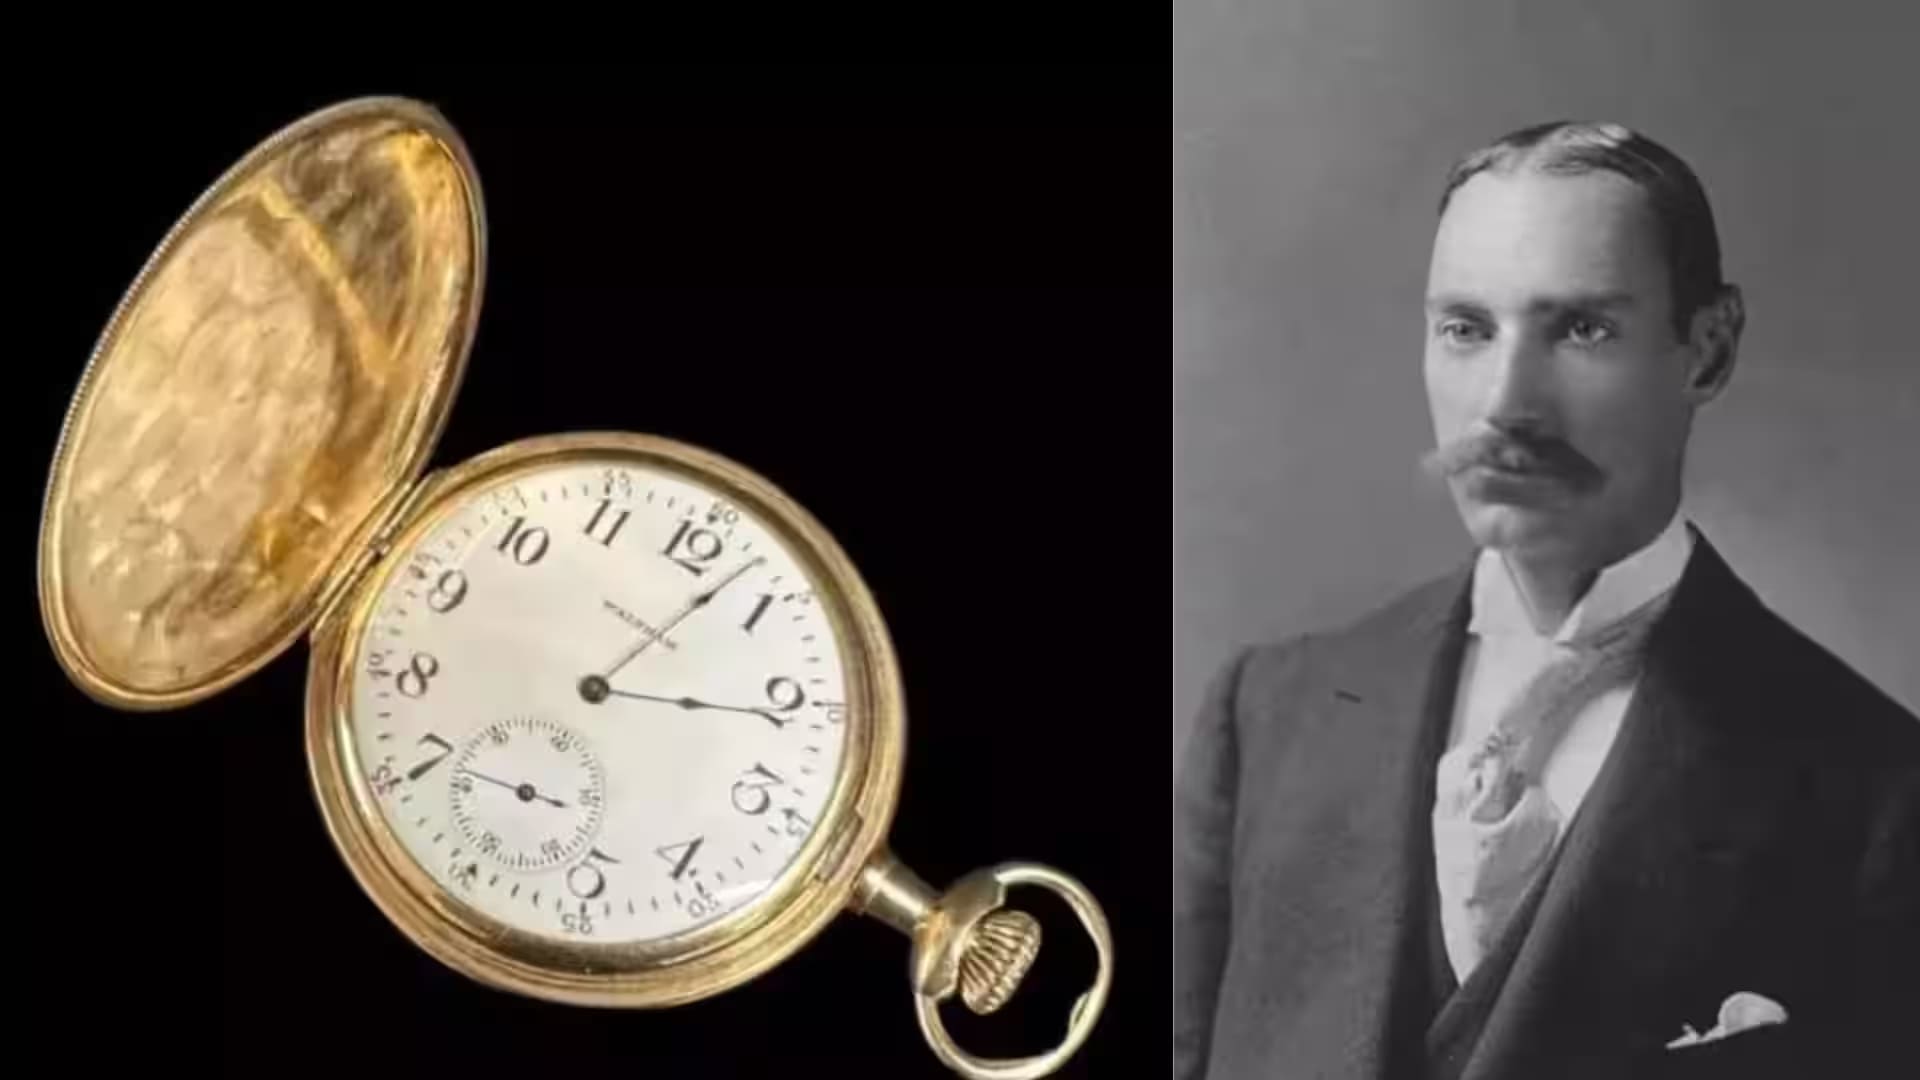 Bán đấu giá chiếc đồng hồ của tỷ phú giàu nhất trên tàu Titanic, hé lộ mức giá chưa từng có - 1